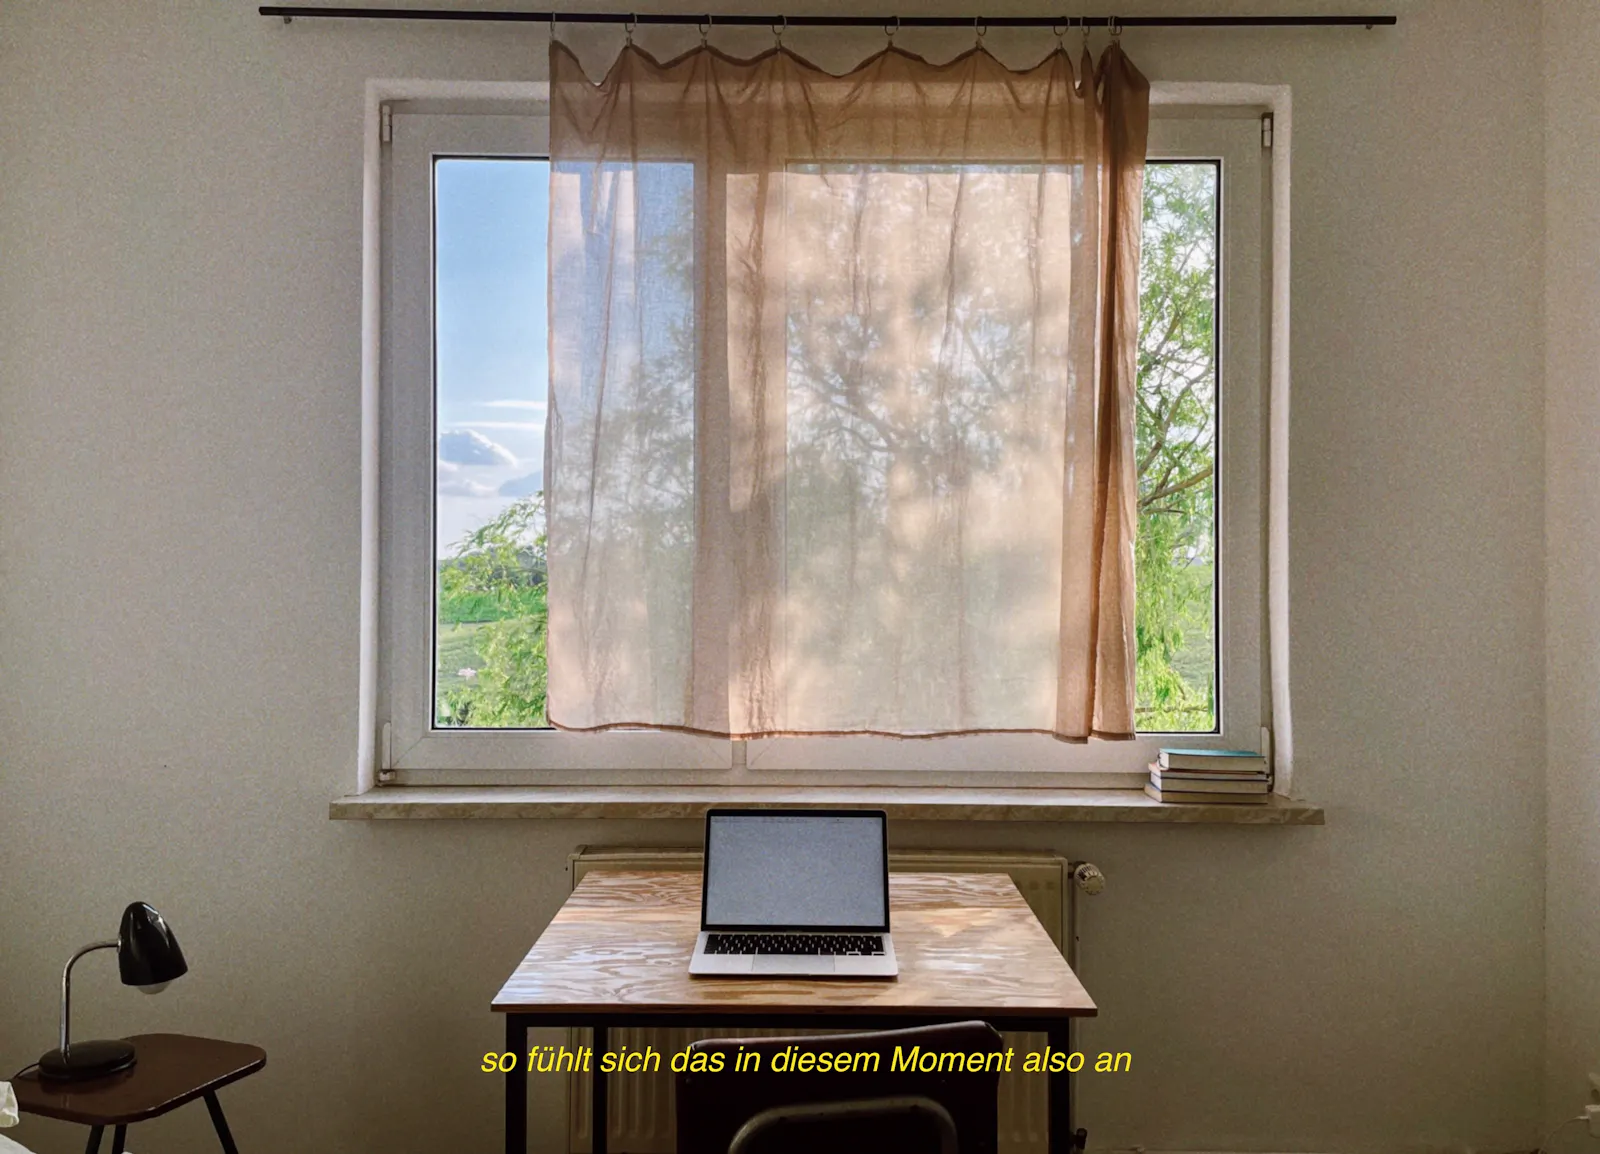 Ein Schreibtisch vor einem Fenster, darauf steht ein aufgeklappter Laptop. Unten in gelber Schrift "so fühlt sich das in diesem Moment also an"